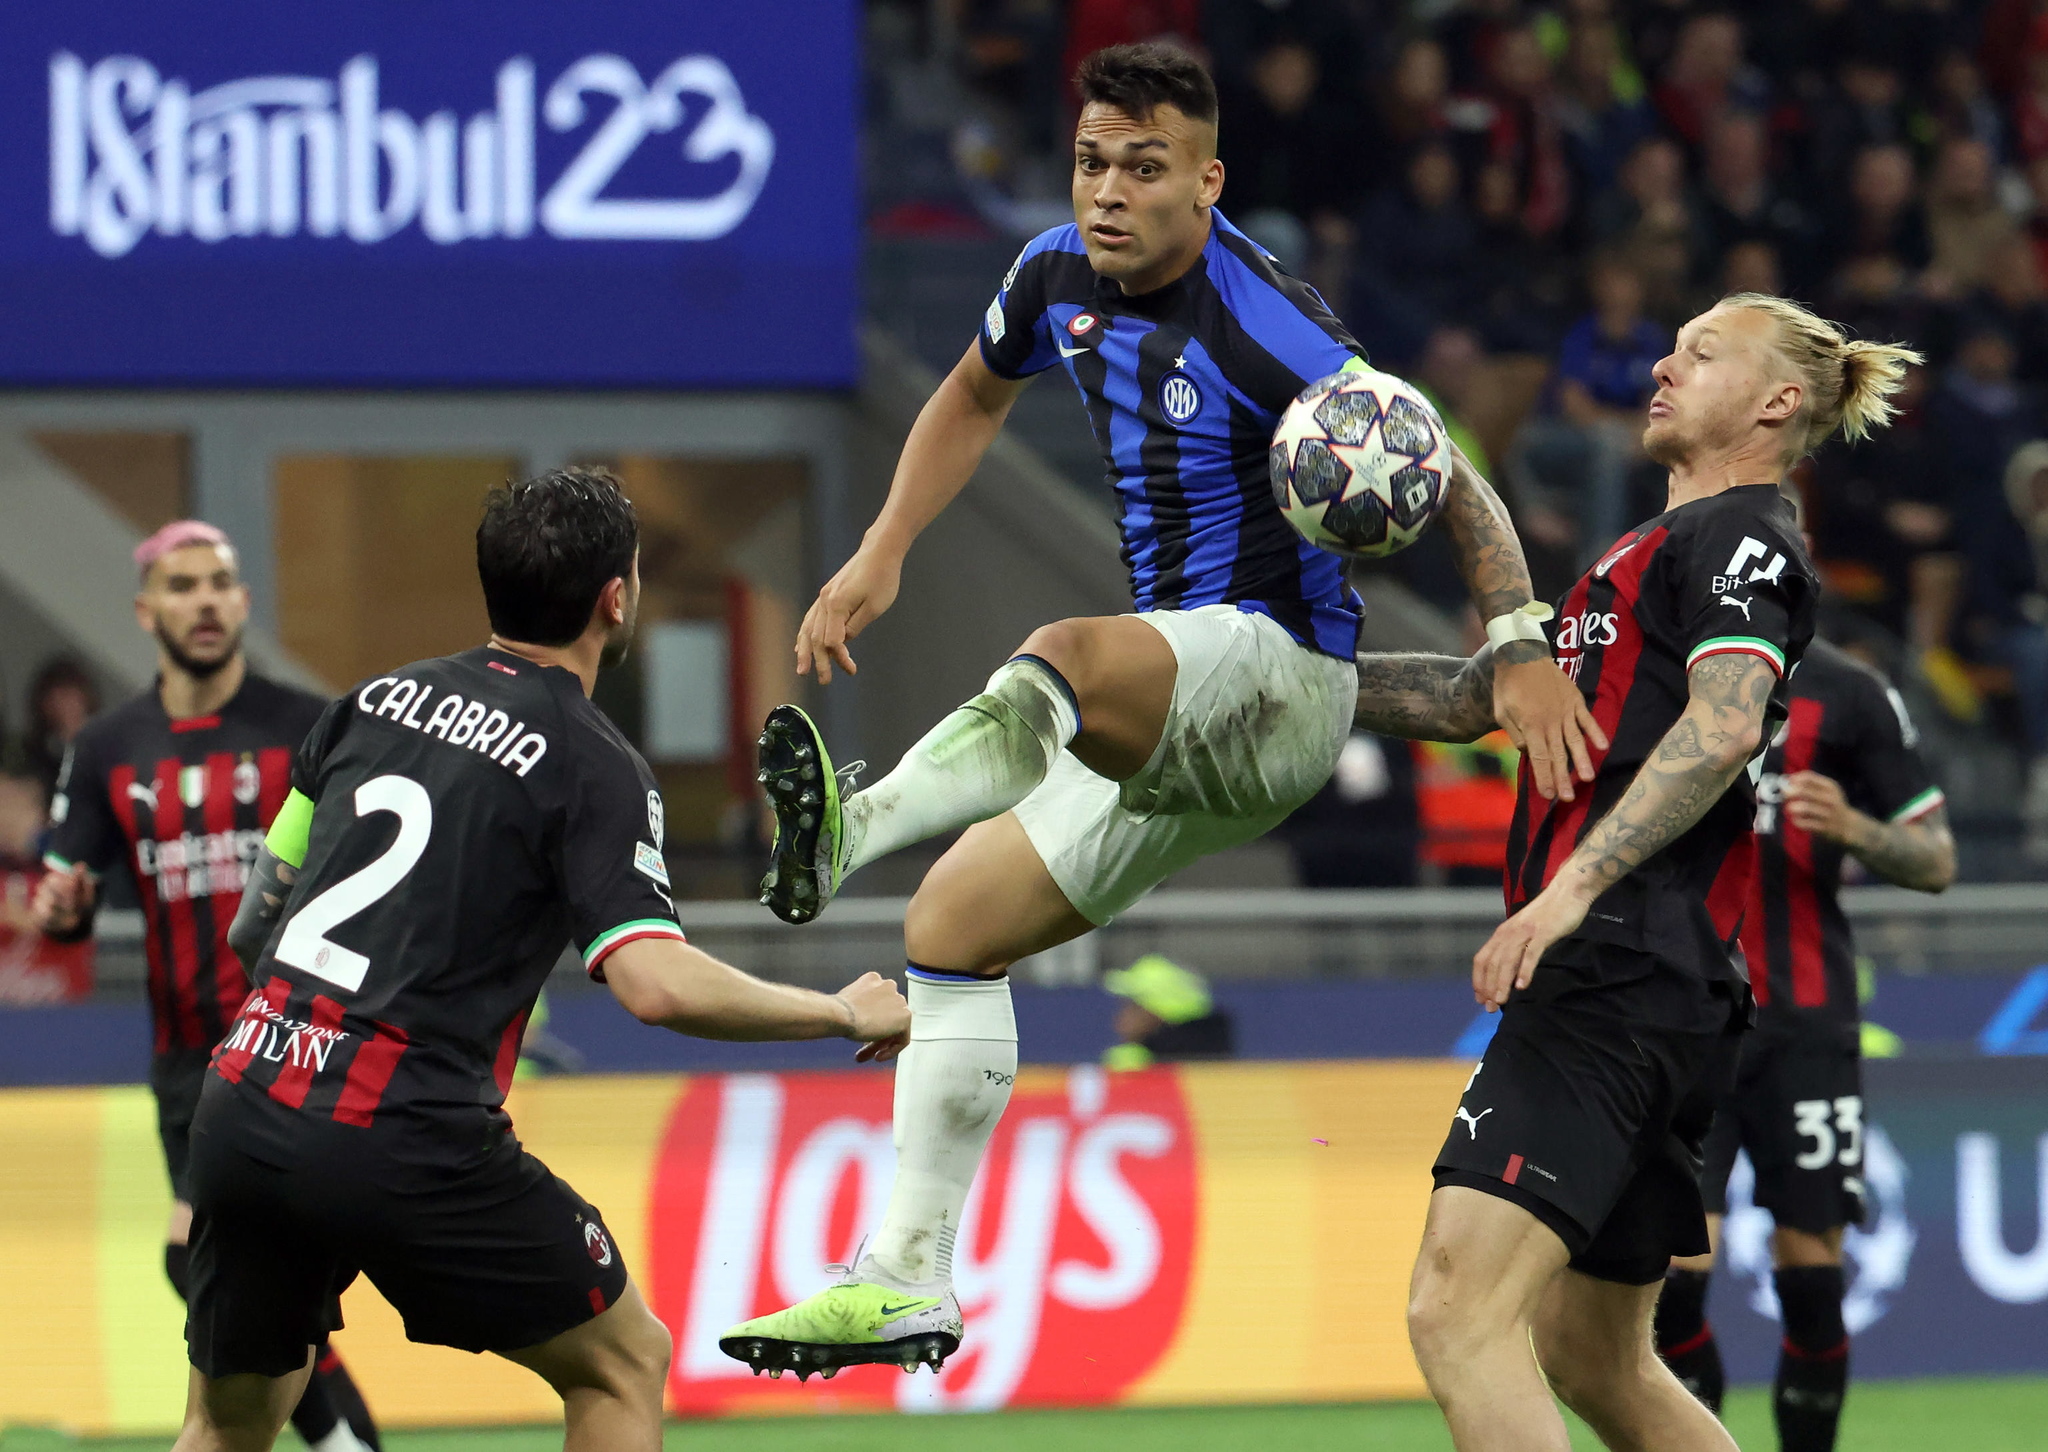 Alineaci�n de Inter y Milan hoy en semifinales de Champions League: Inzaghi repite once y Leao es titular